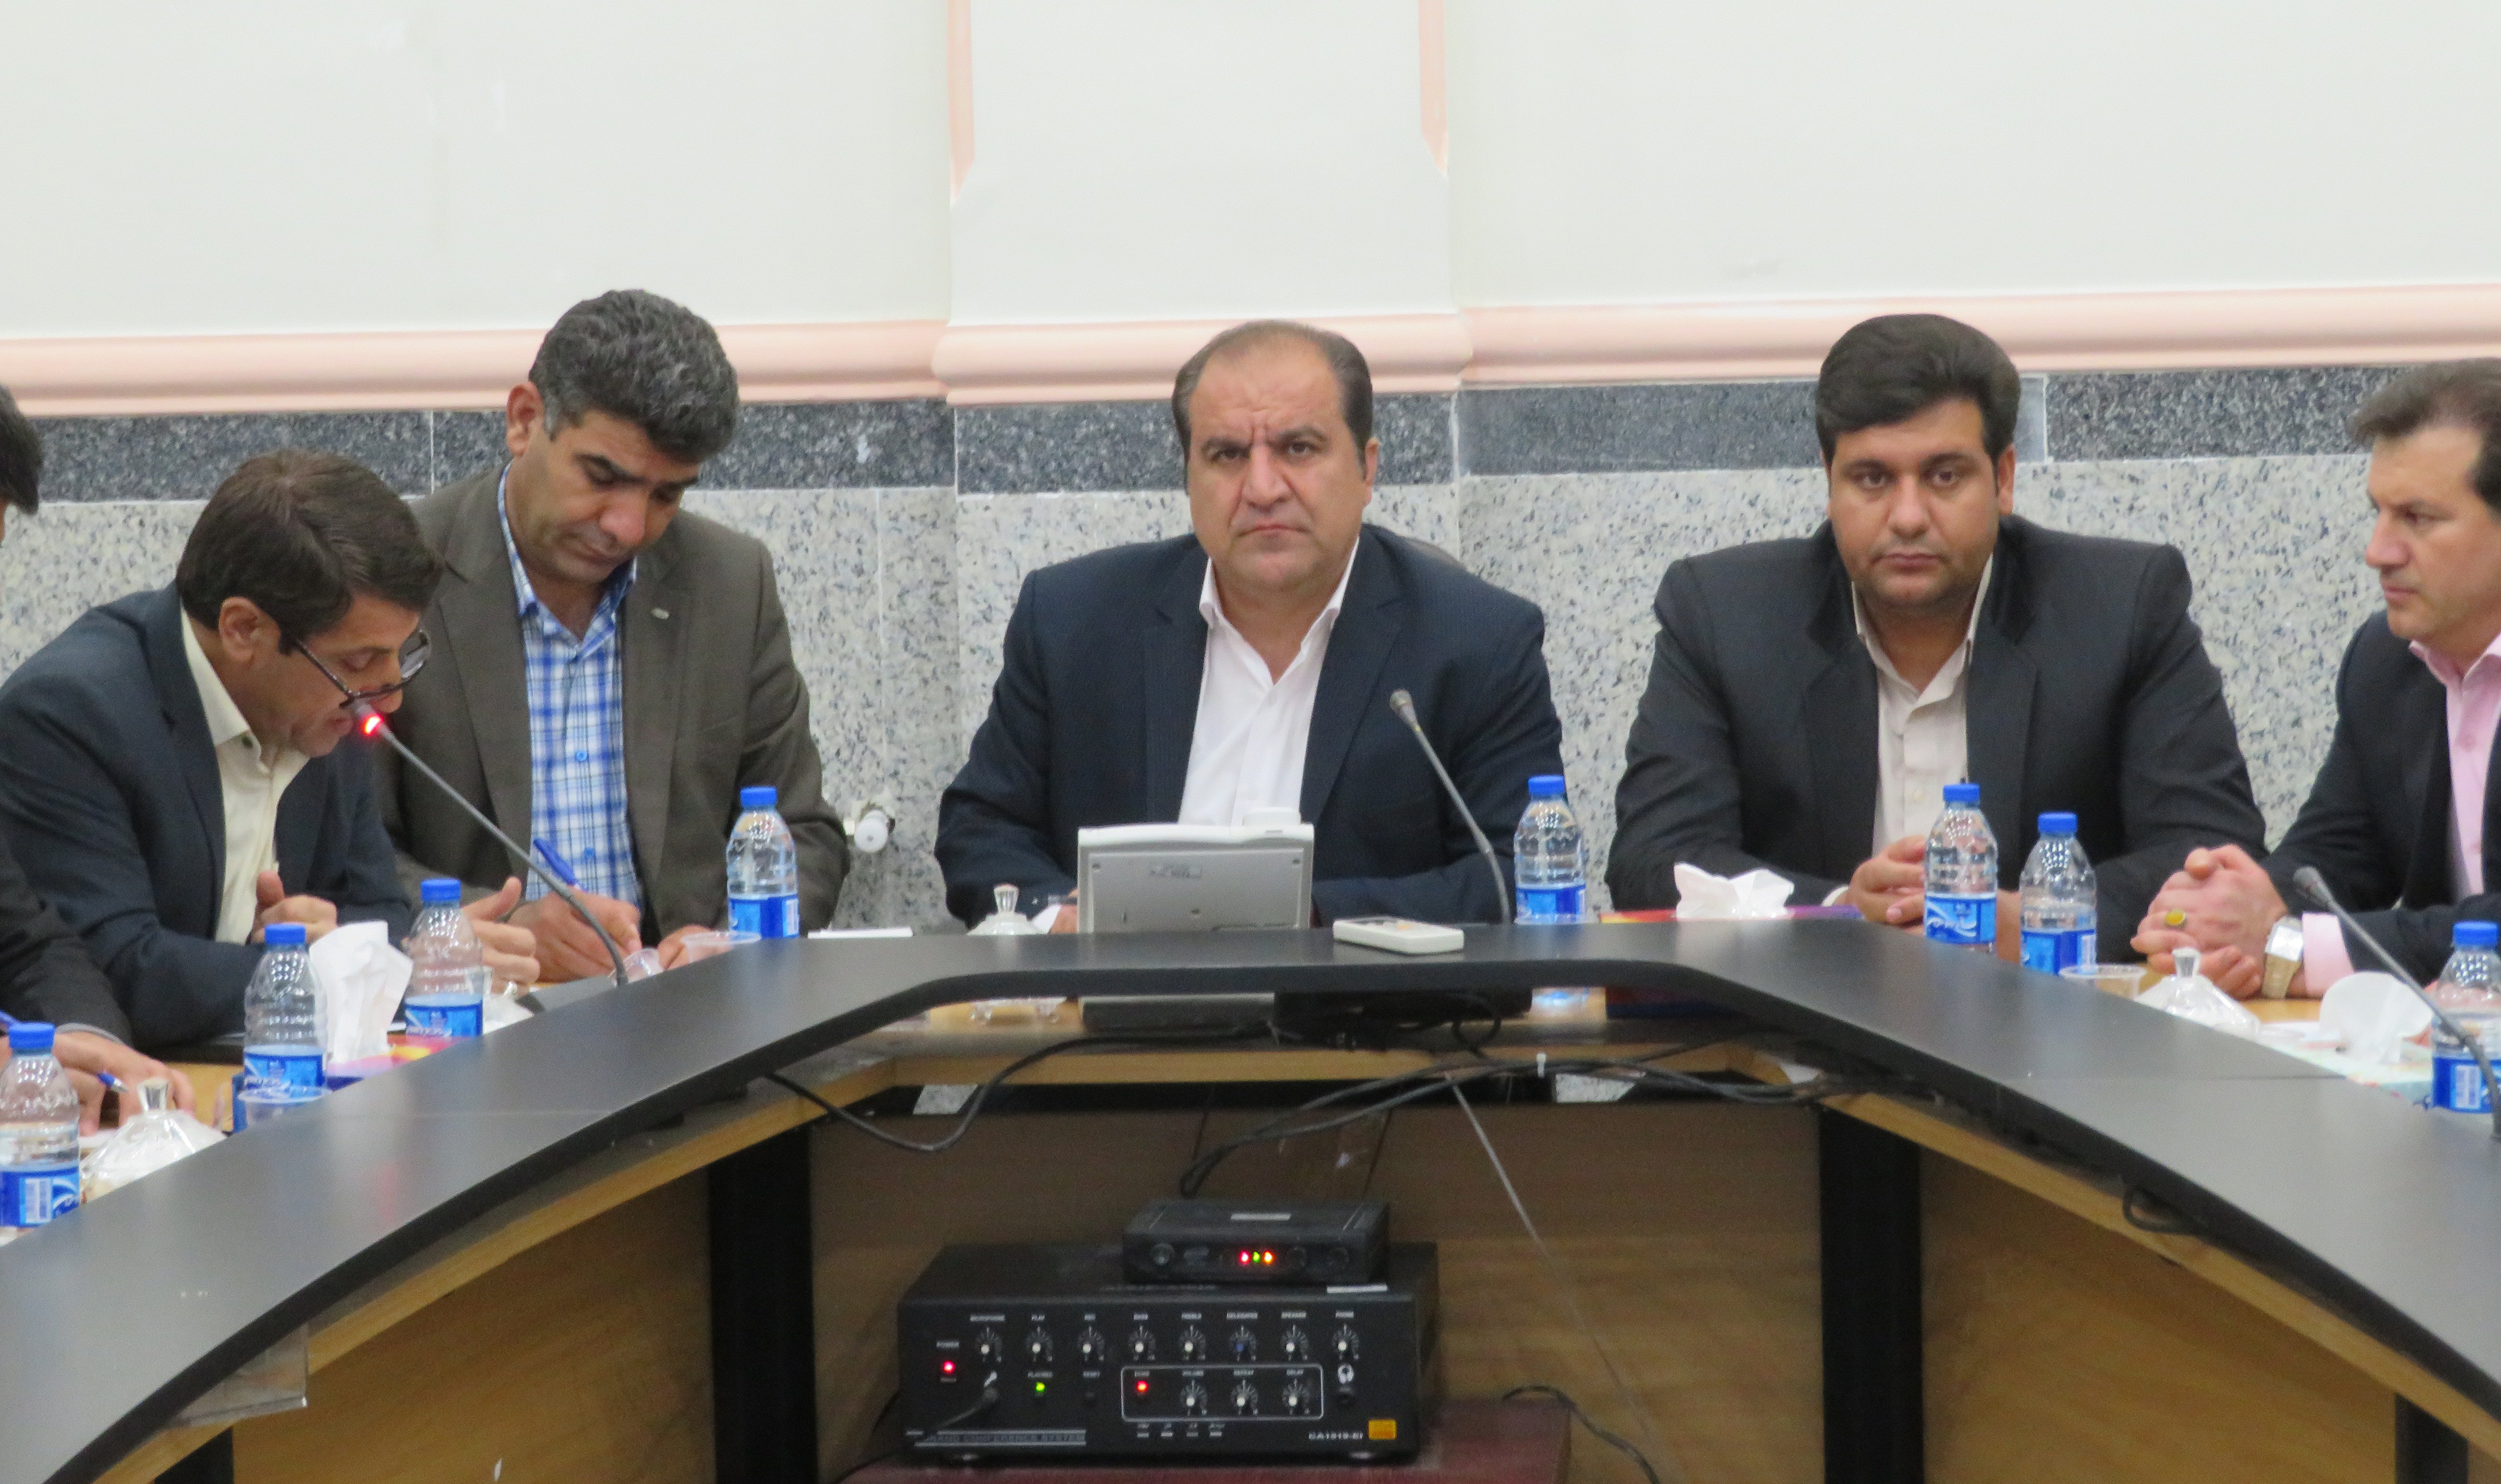 جلسه شورای فنی استان با حضور معاون هماهنگی امور عمرانی به سه دستور کار برگزار شد